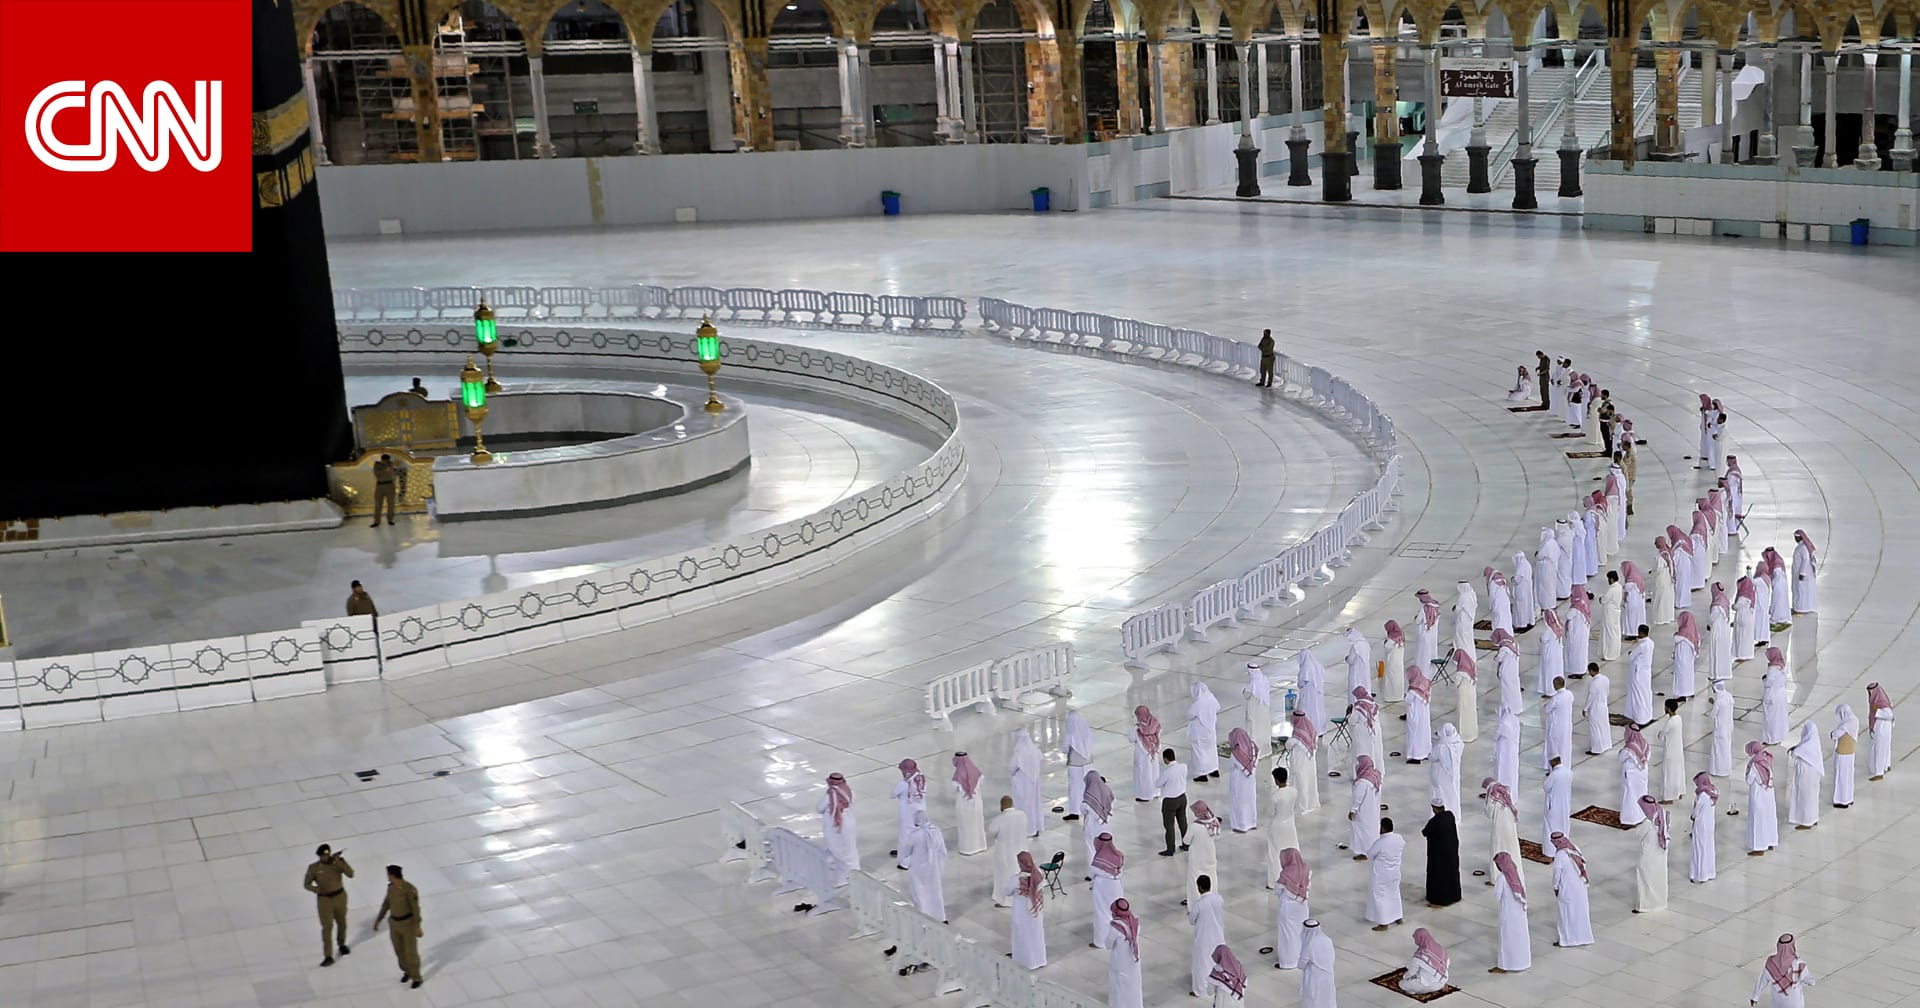 السعودية: صلاة عيد الفطر في الحرمين دون مصلين وتكبيرات فقط في باقي المساجد - CNN Arabic